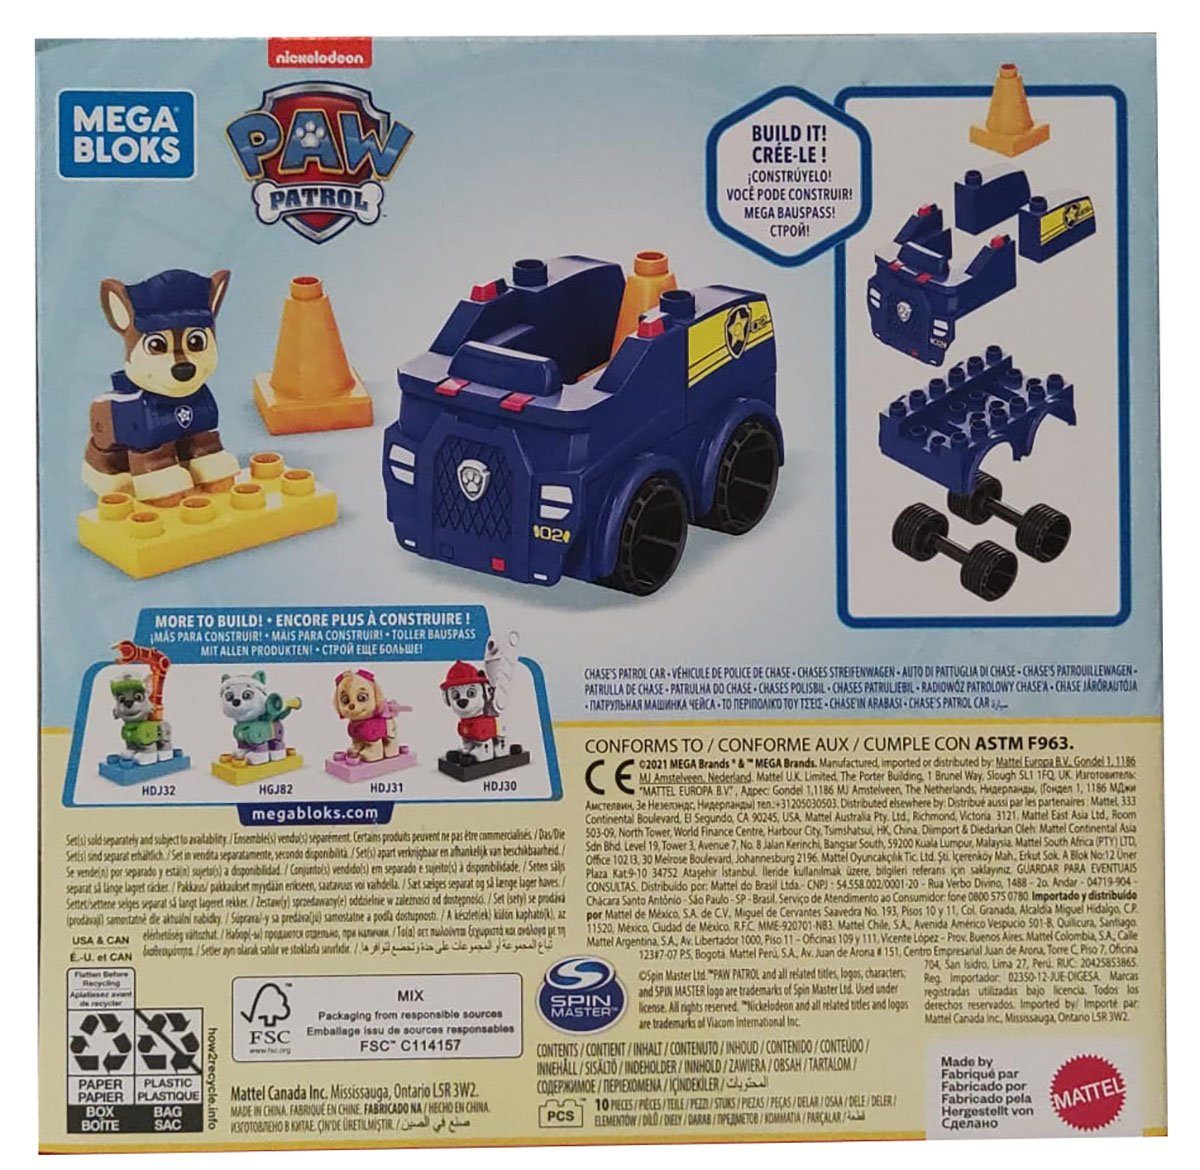 Mattel® Spielbausteine Polizeiauto Mega Bausatz, HDJ33 Bloks Patrol Paw 1